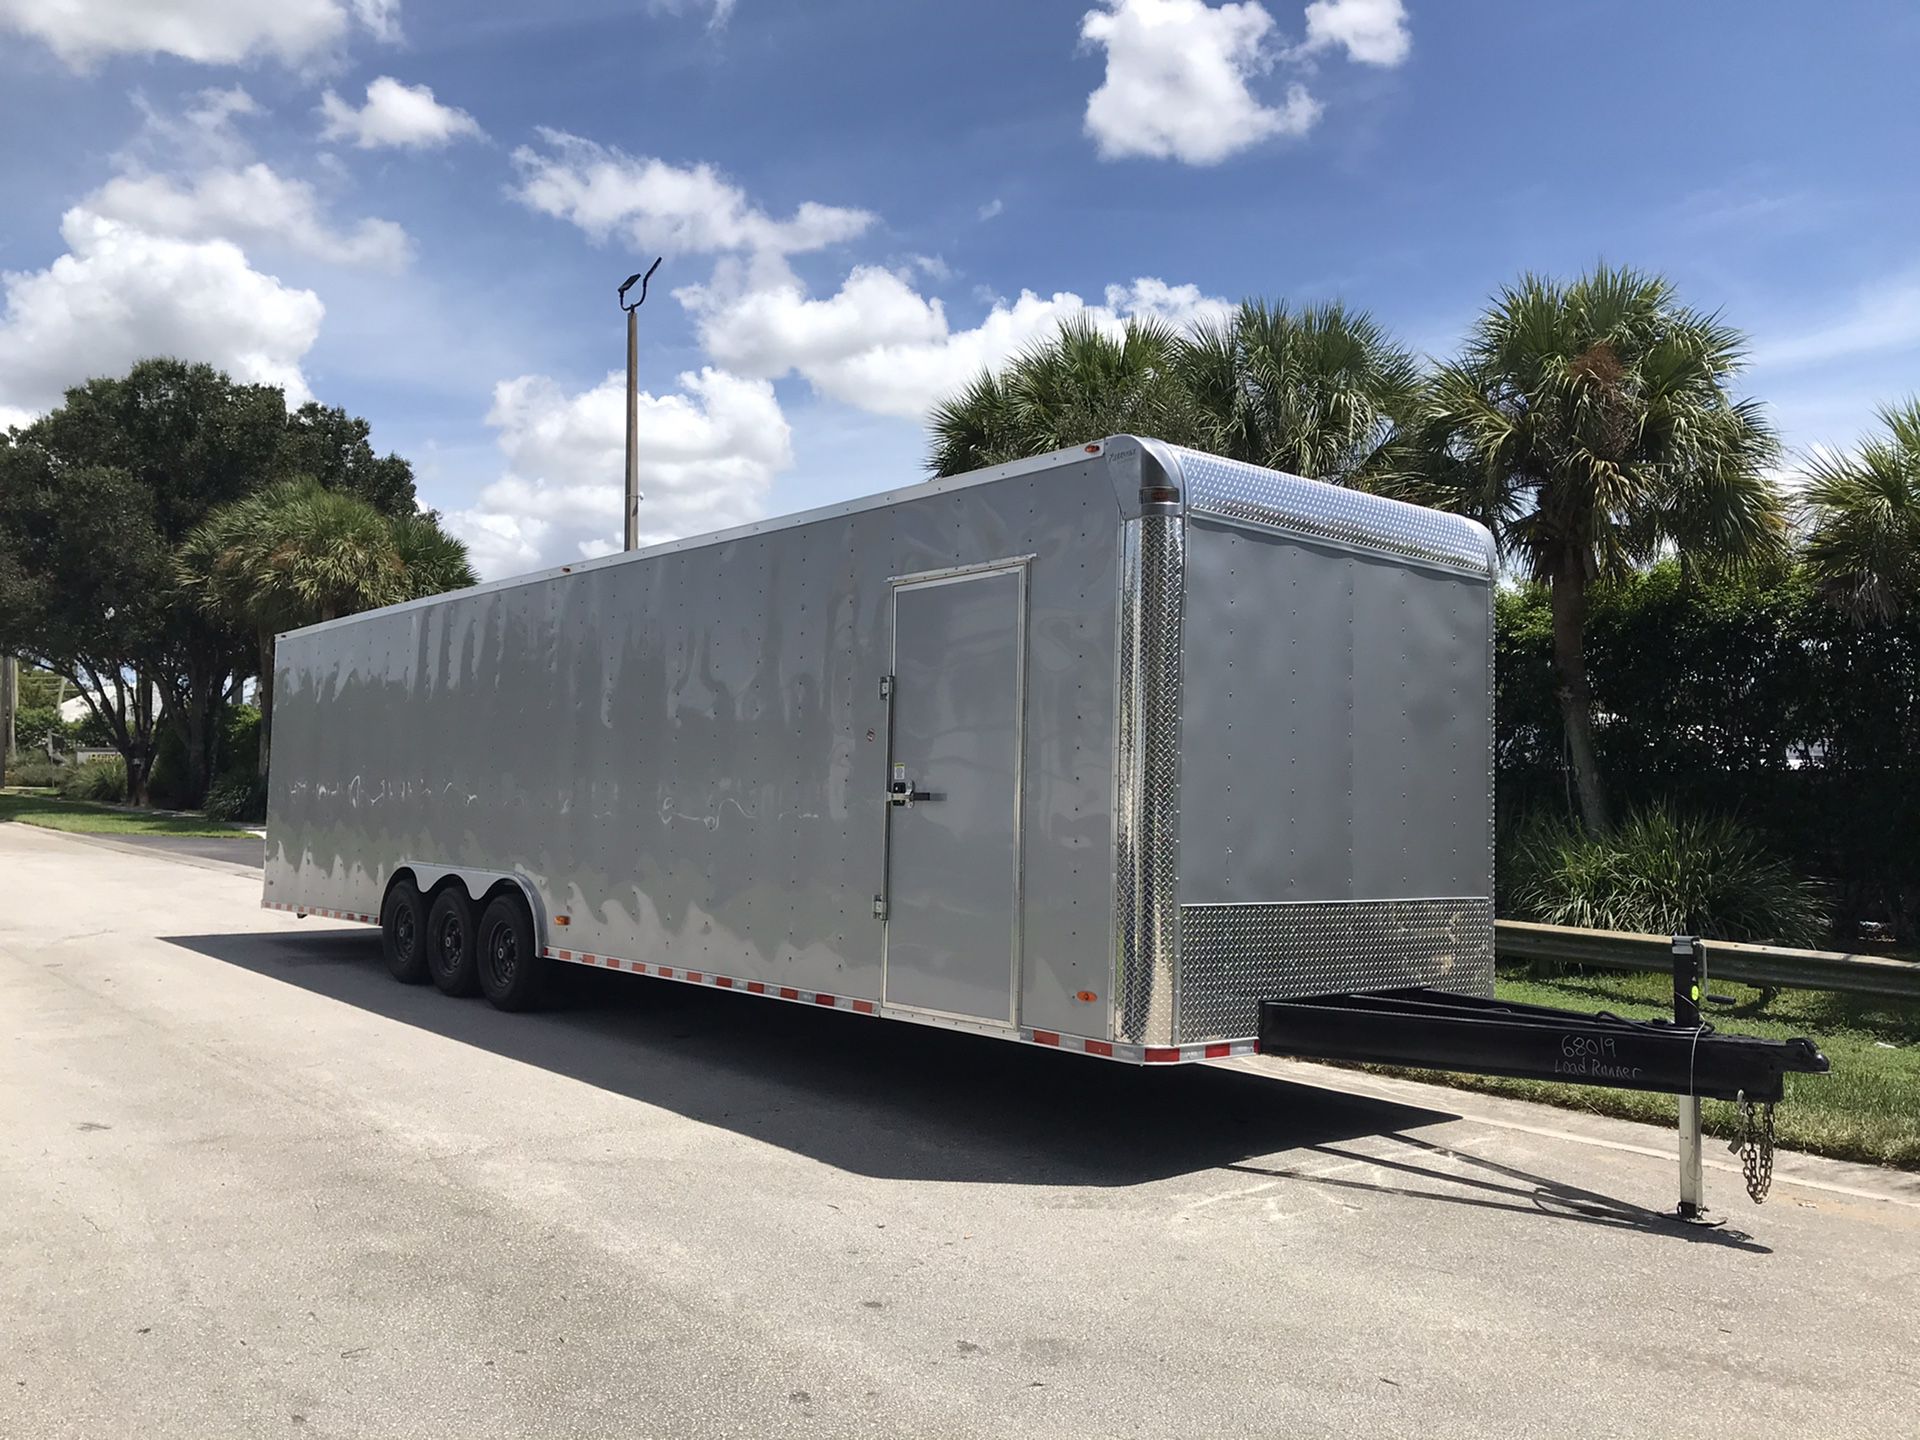 Enclosed Trailer 8.5x36 two car hauler